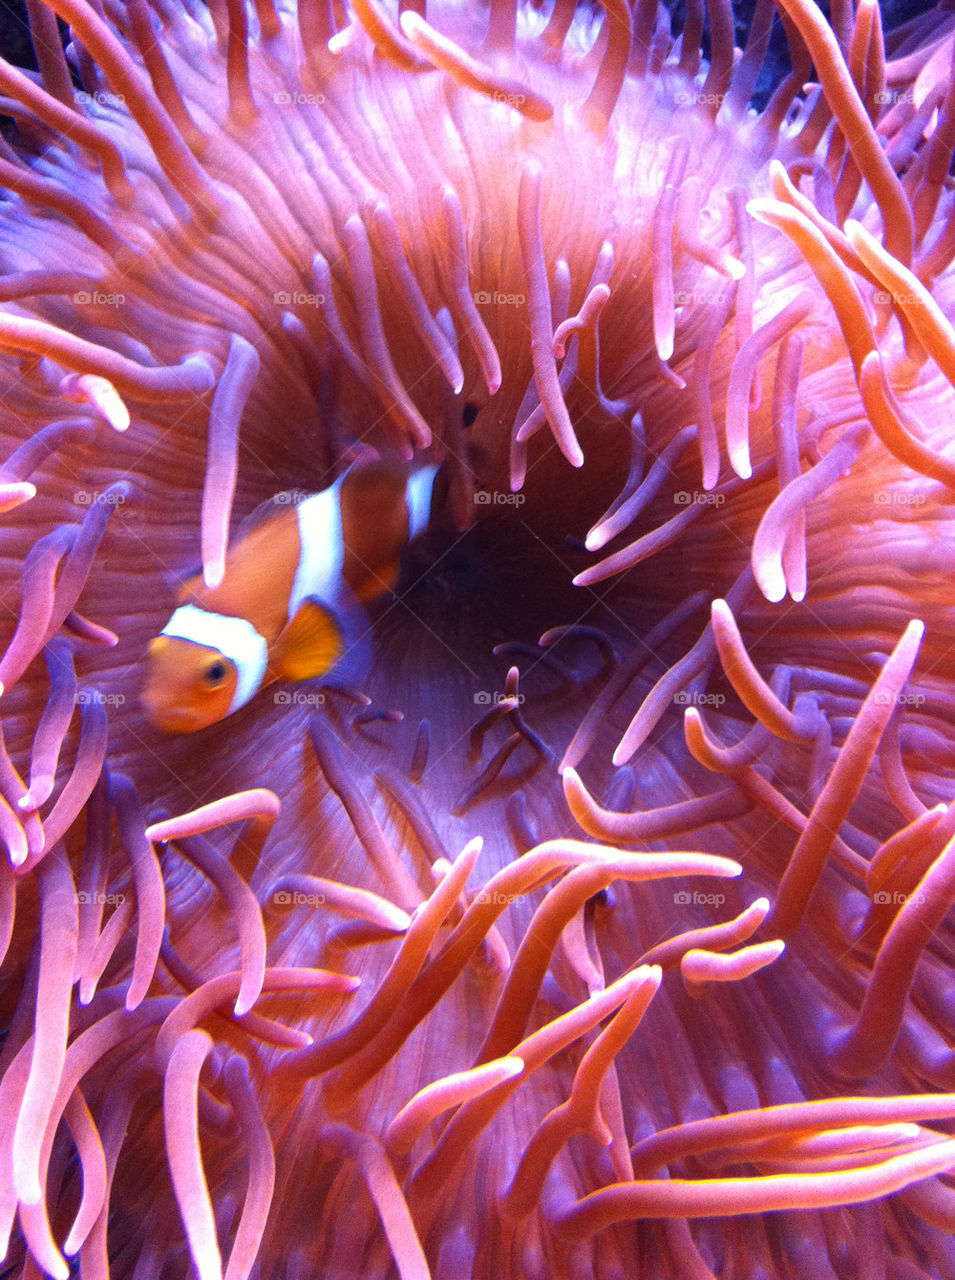 fish clownfish by geekz